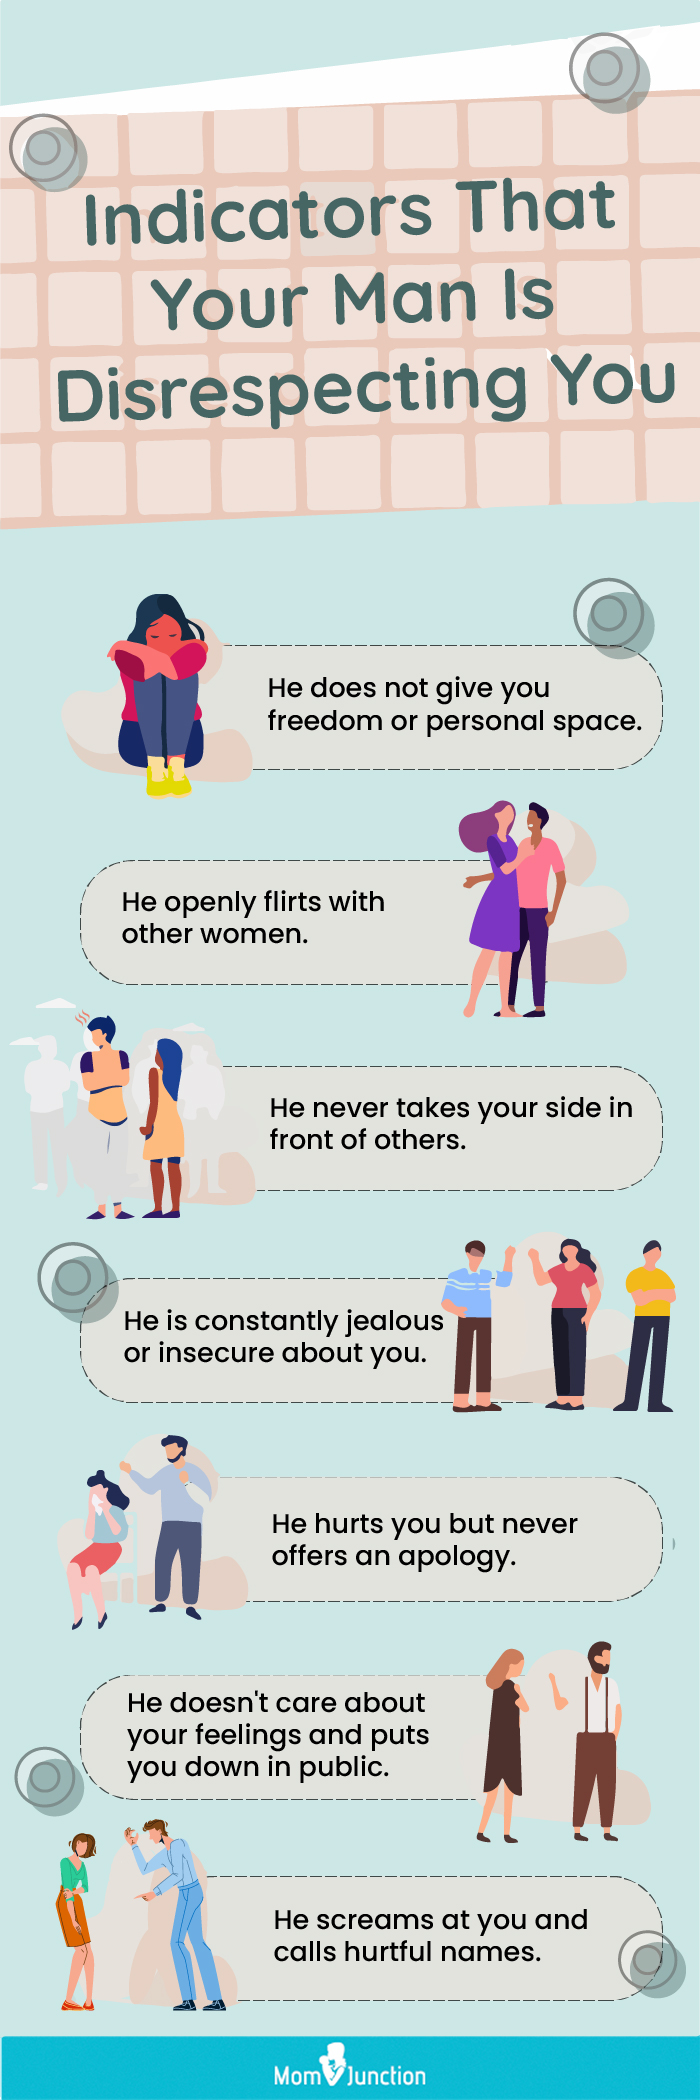 24 نشانه بی احترامی در یک رابطه (و نحوه برخورد با آن)